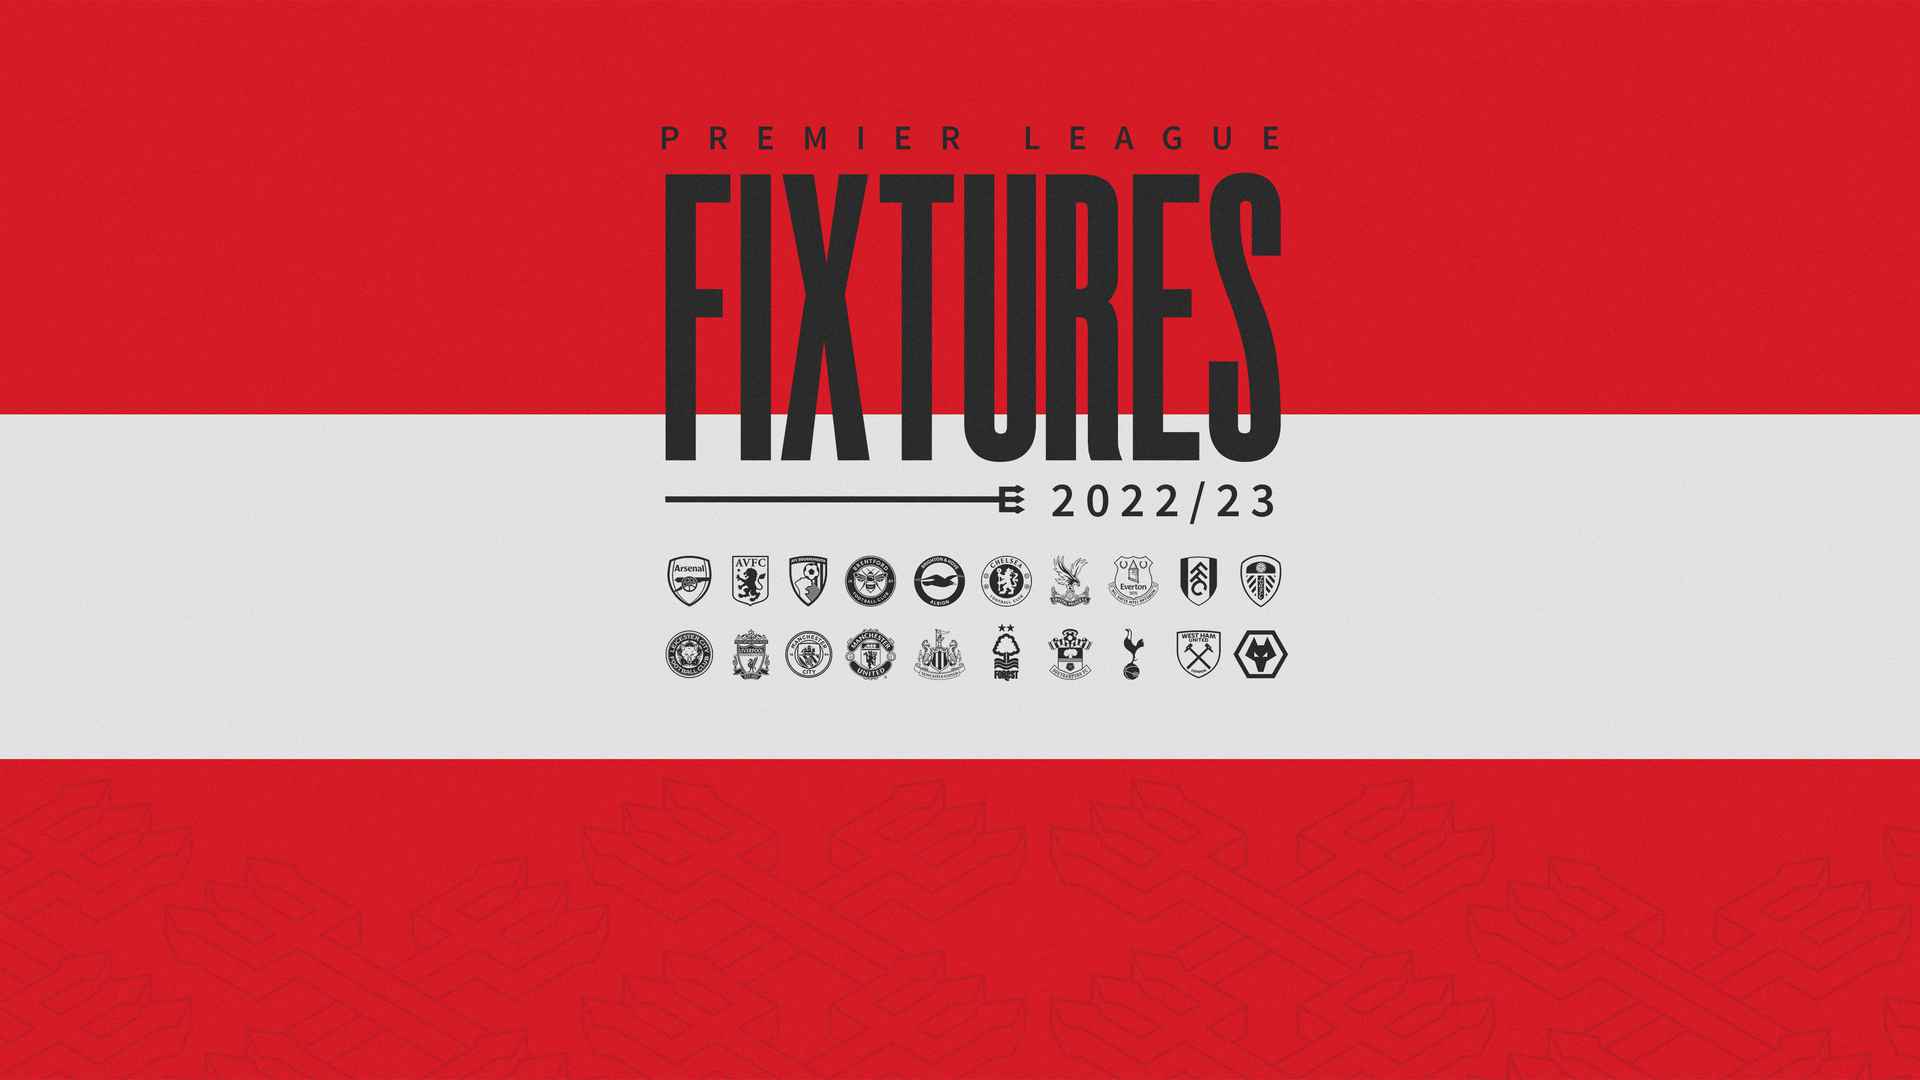 Download: Fixtures released for 2022/23 season